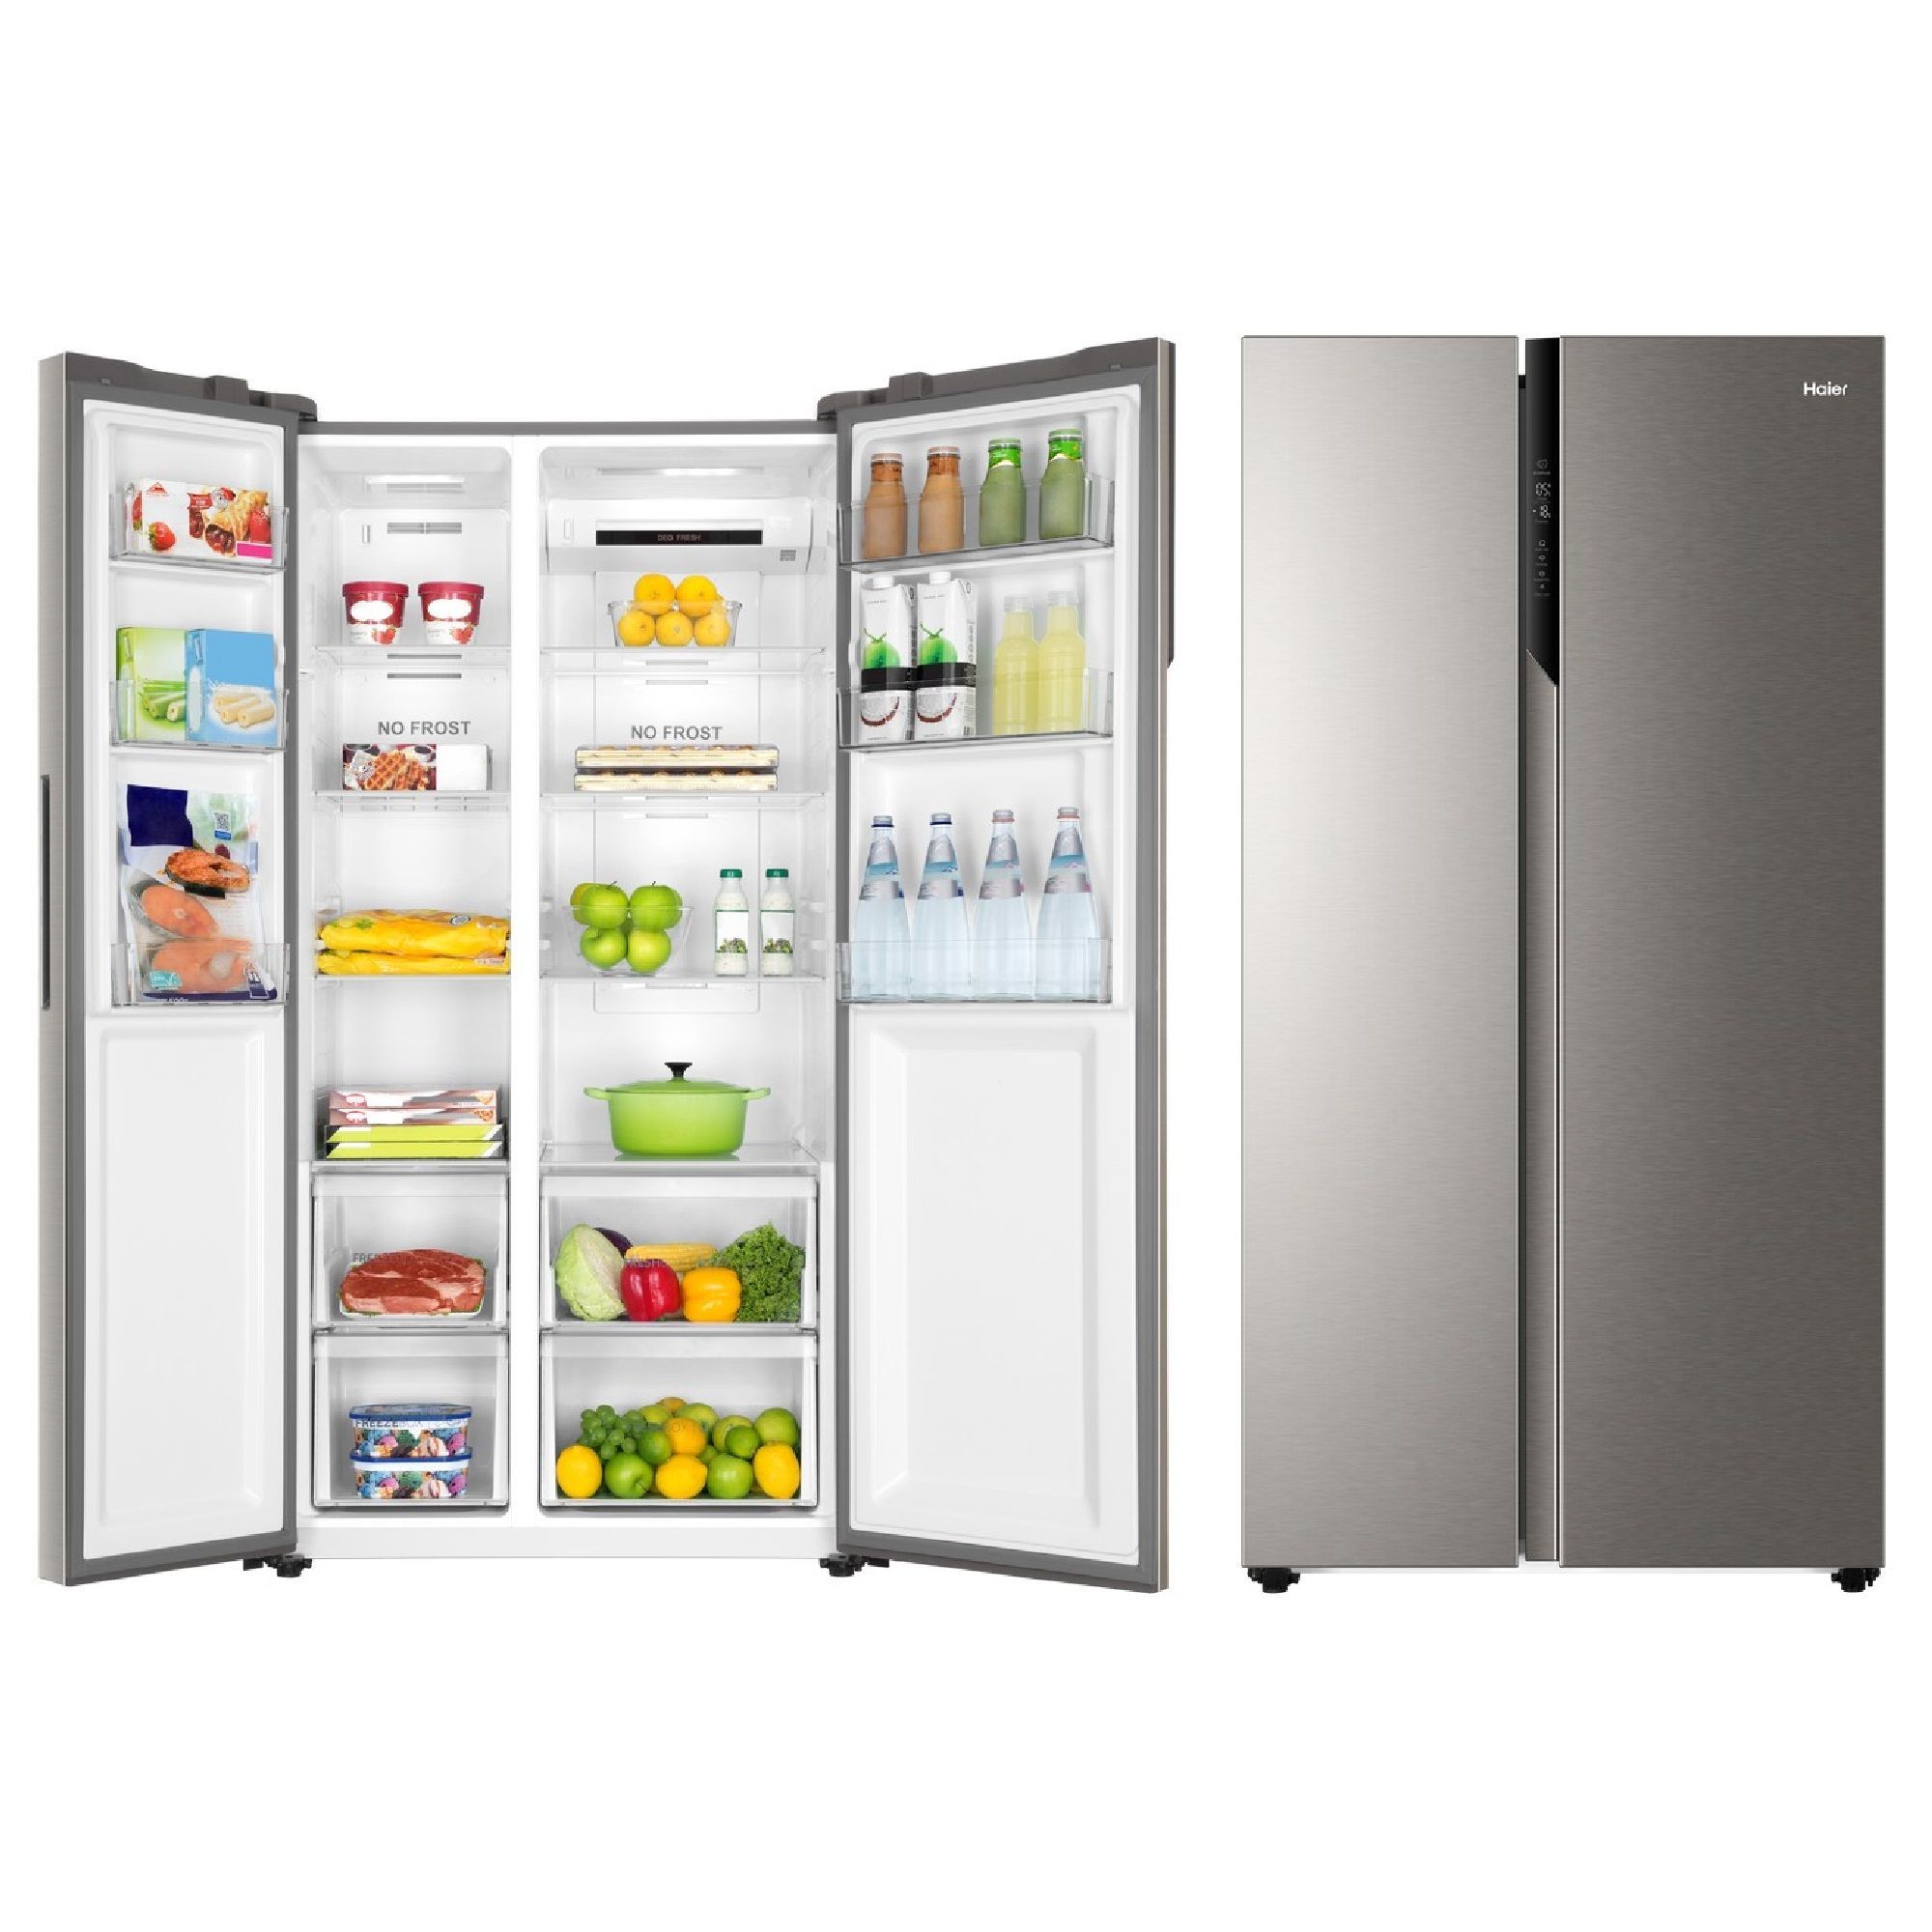 Холодильник side by side haier hrf. Холодильник (Side-by-Side) Haier HRF-541dm7ru. HRF-541dm7ru холодильник. Холодильник Haier Side by Side. Холодильник Haier HRF-541dm7ru.